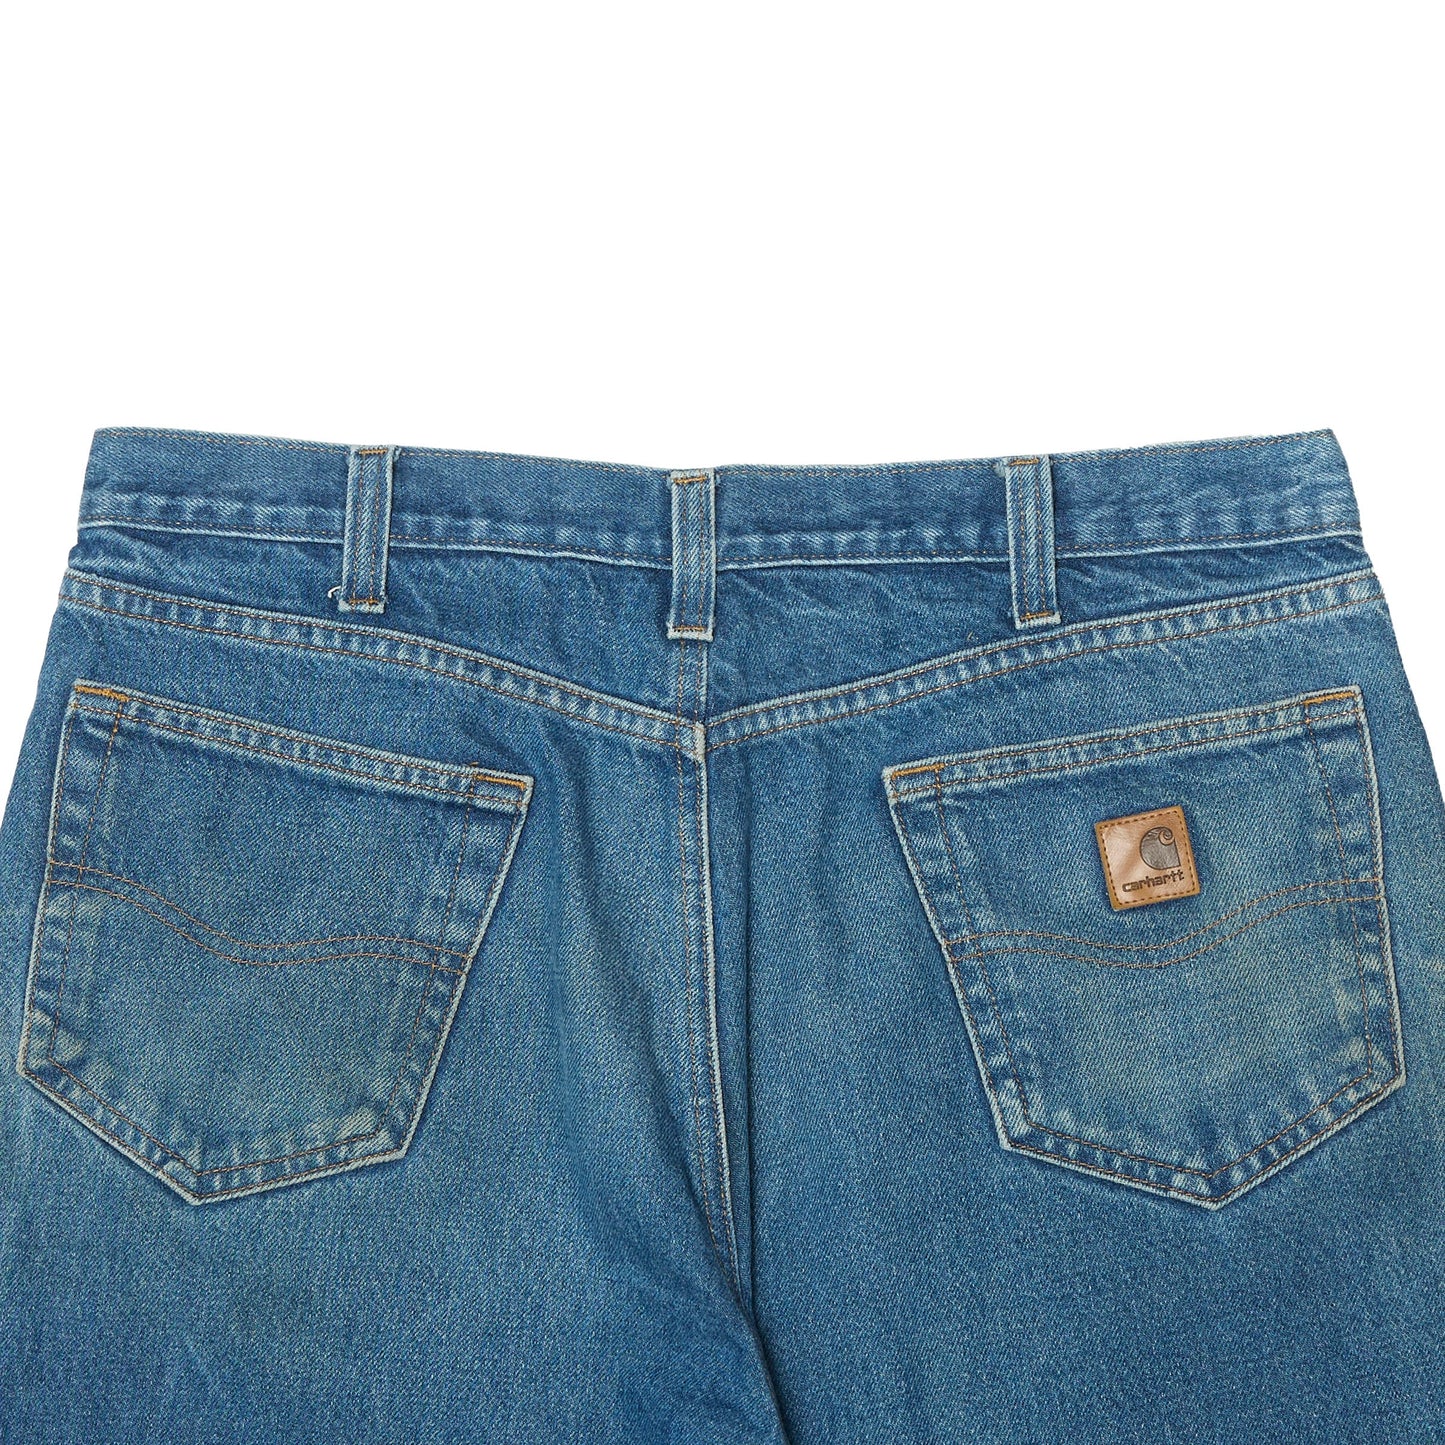 Carhartt Straight Leg Jeans - W36" L36"